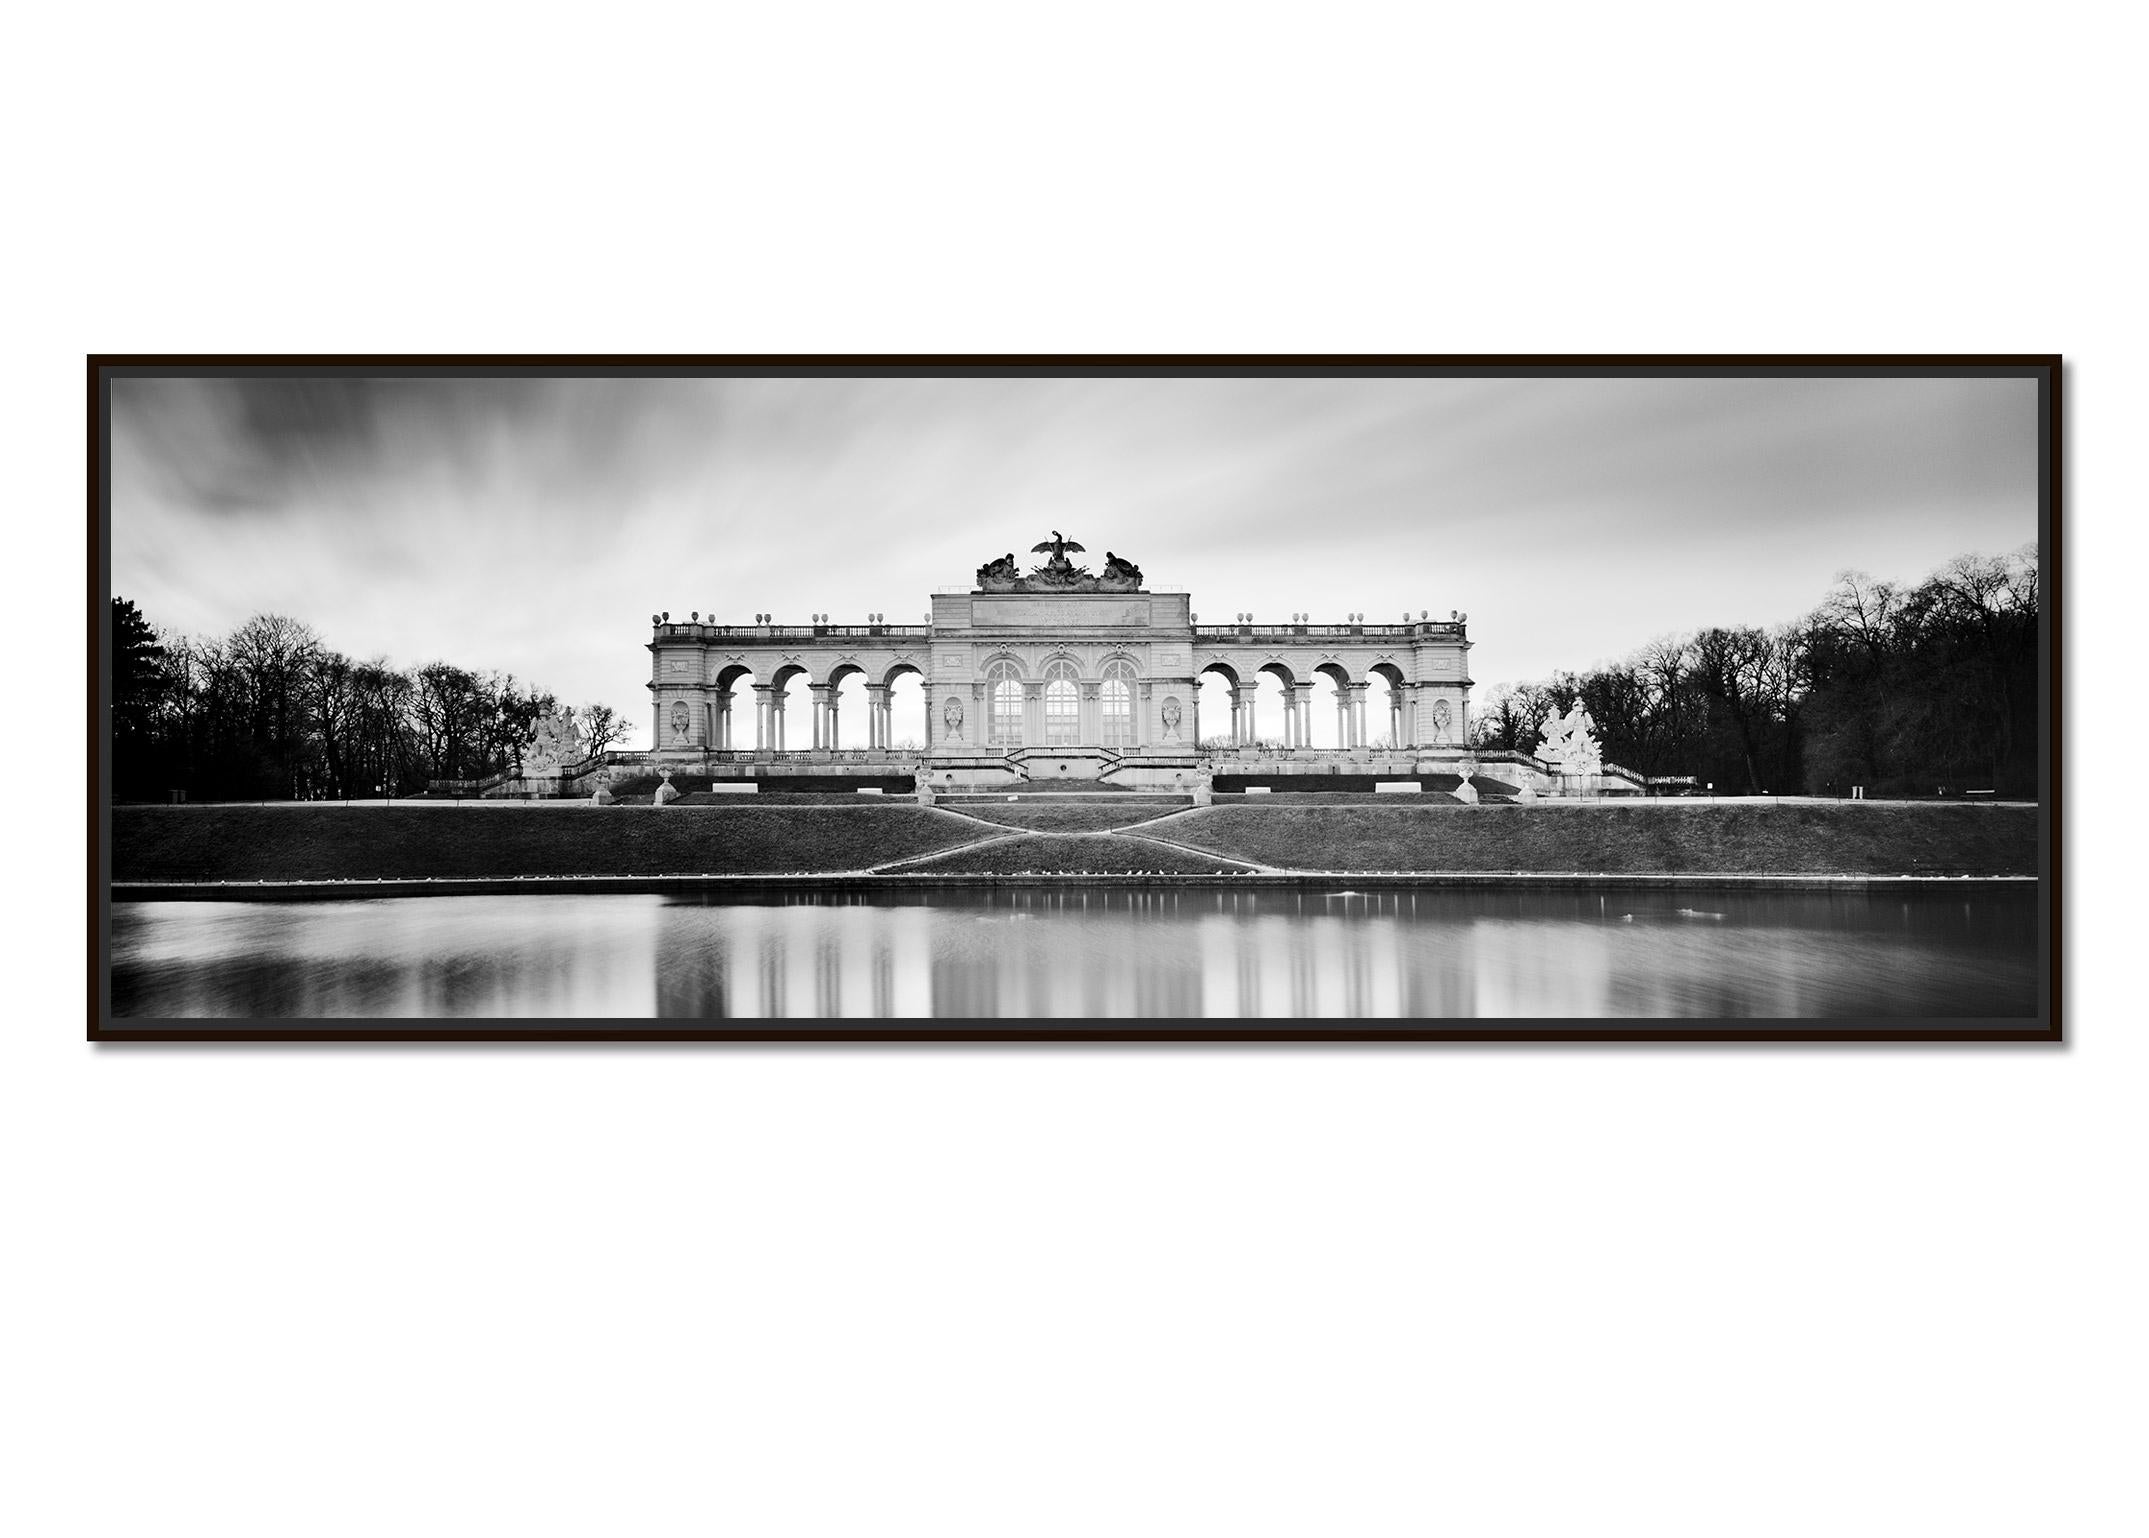 Gloriette Panorama, Schloss Schoenbrunn, Vienna, black and white art photography - Photograph by Gerald Berghammer